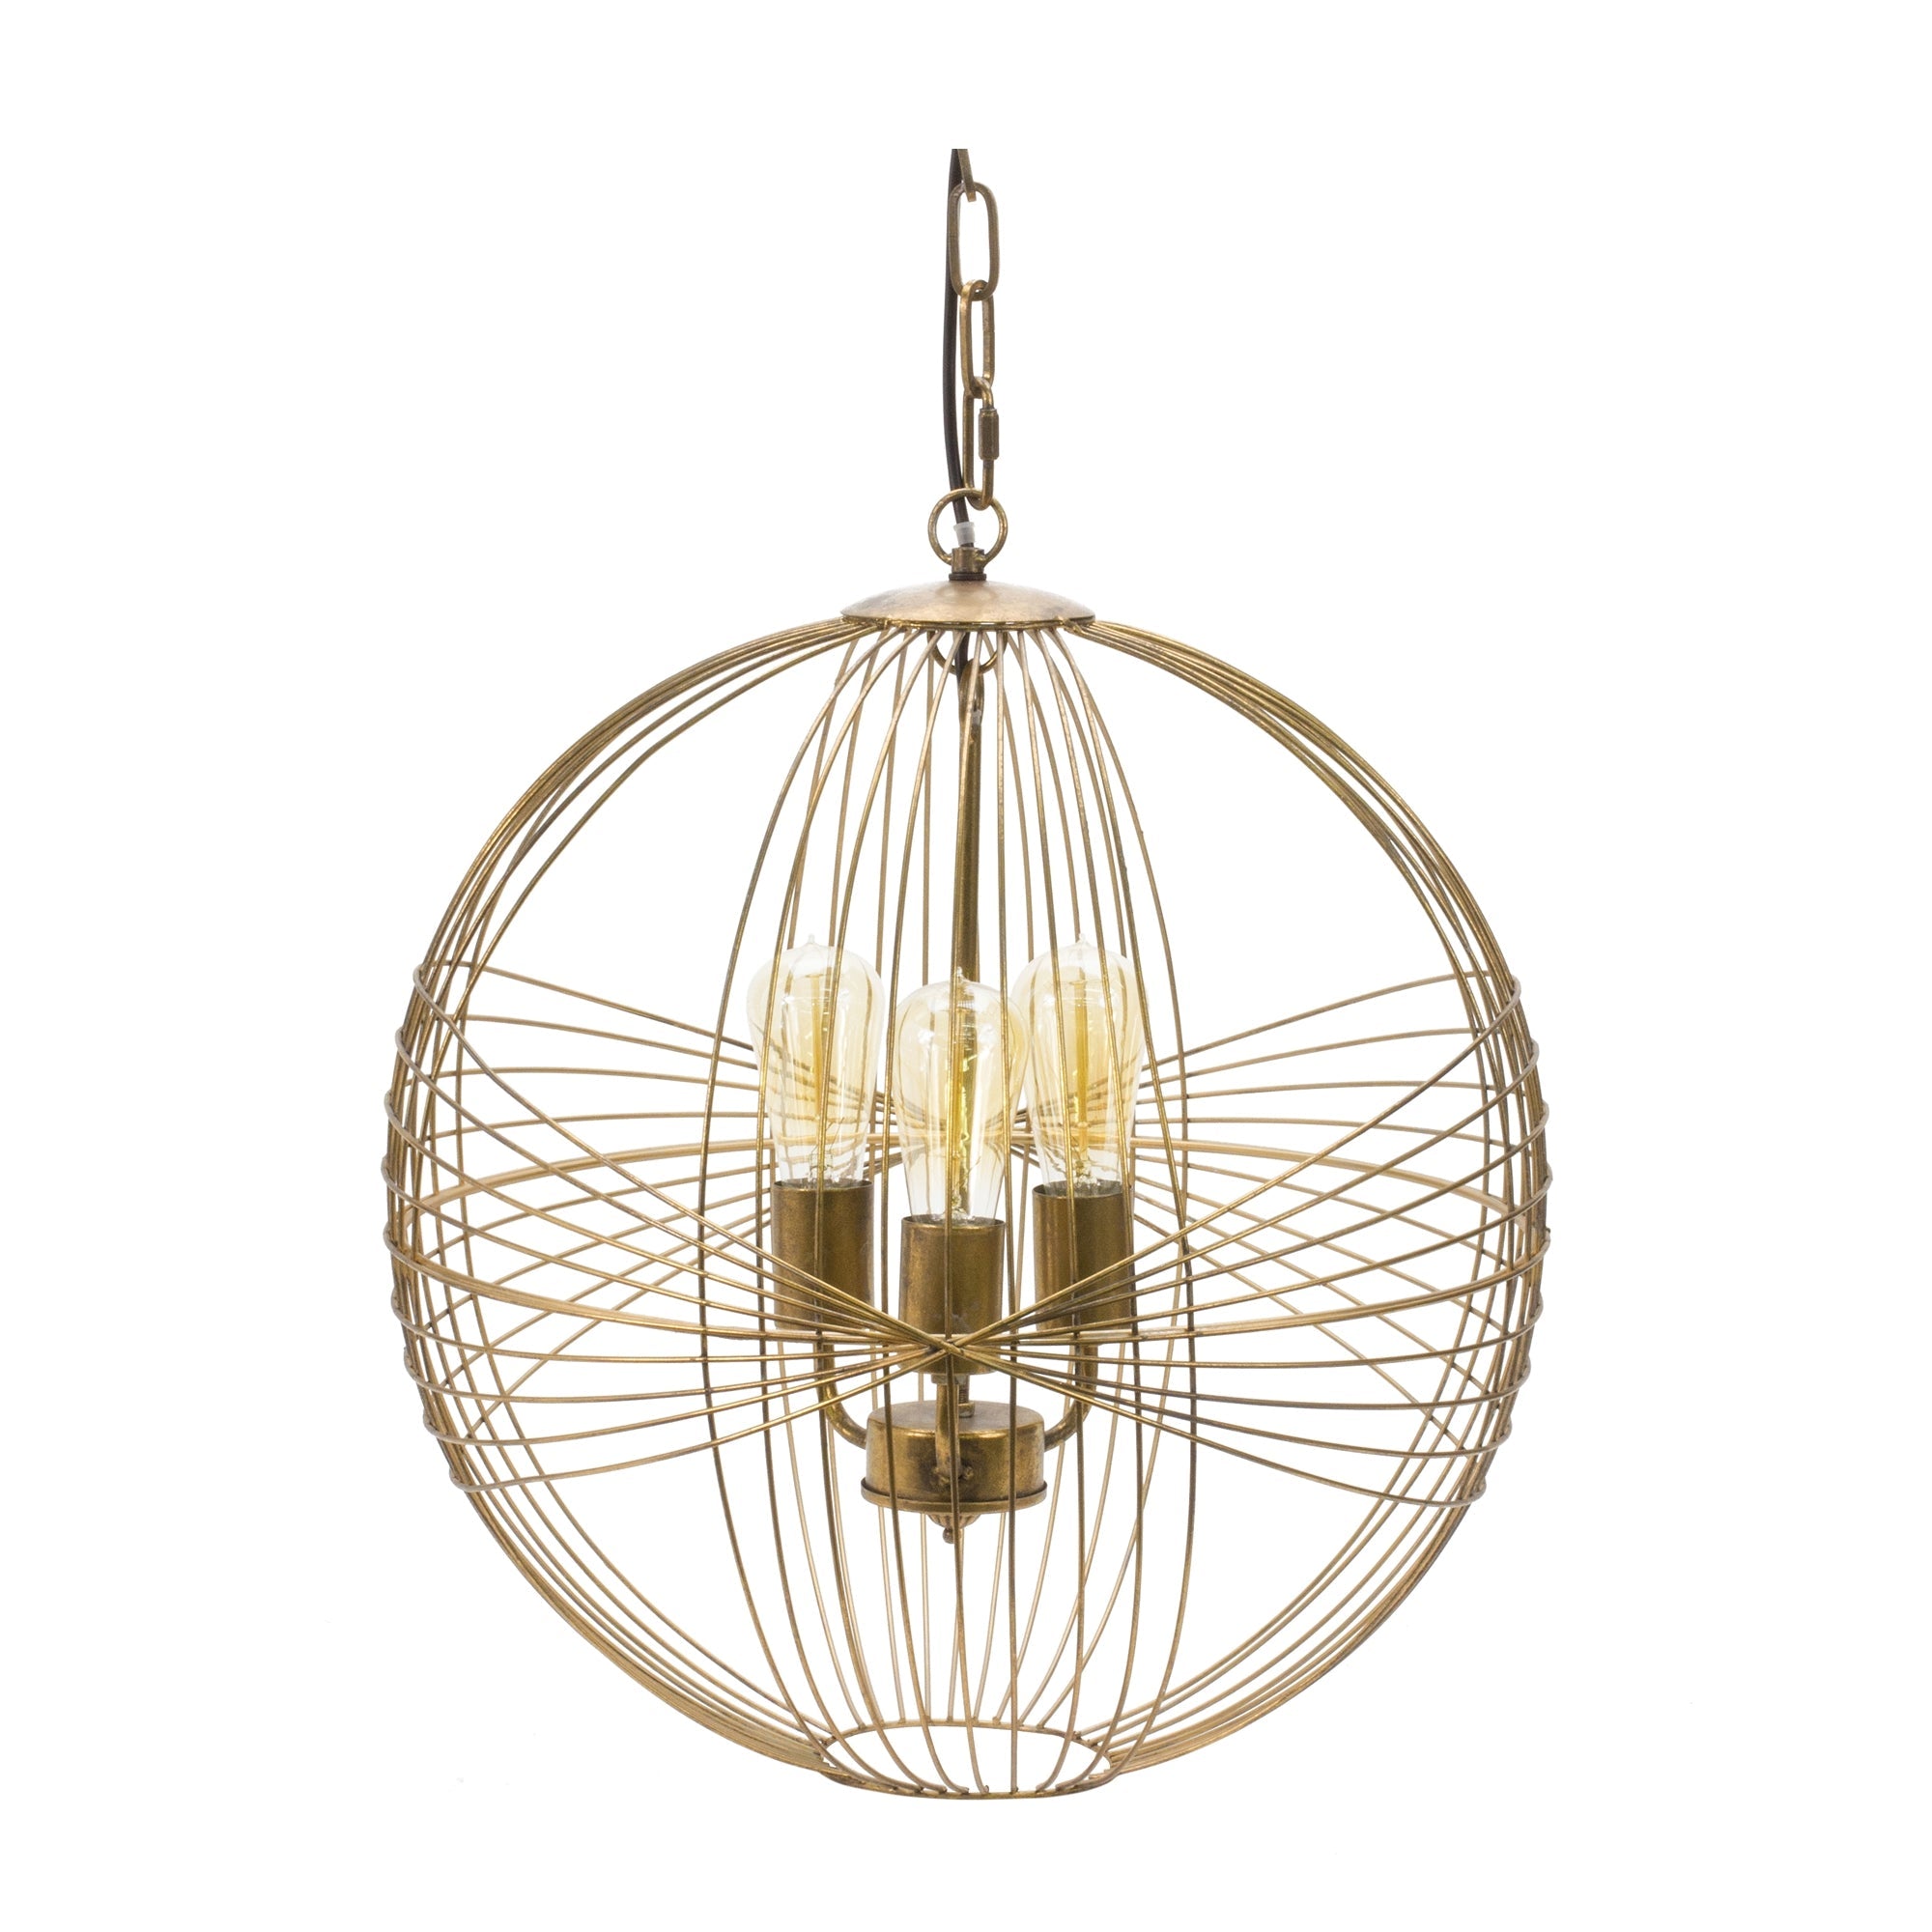 Intricate Metal Sphere Hanging Lamp 20" - Pier 1